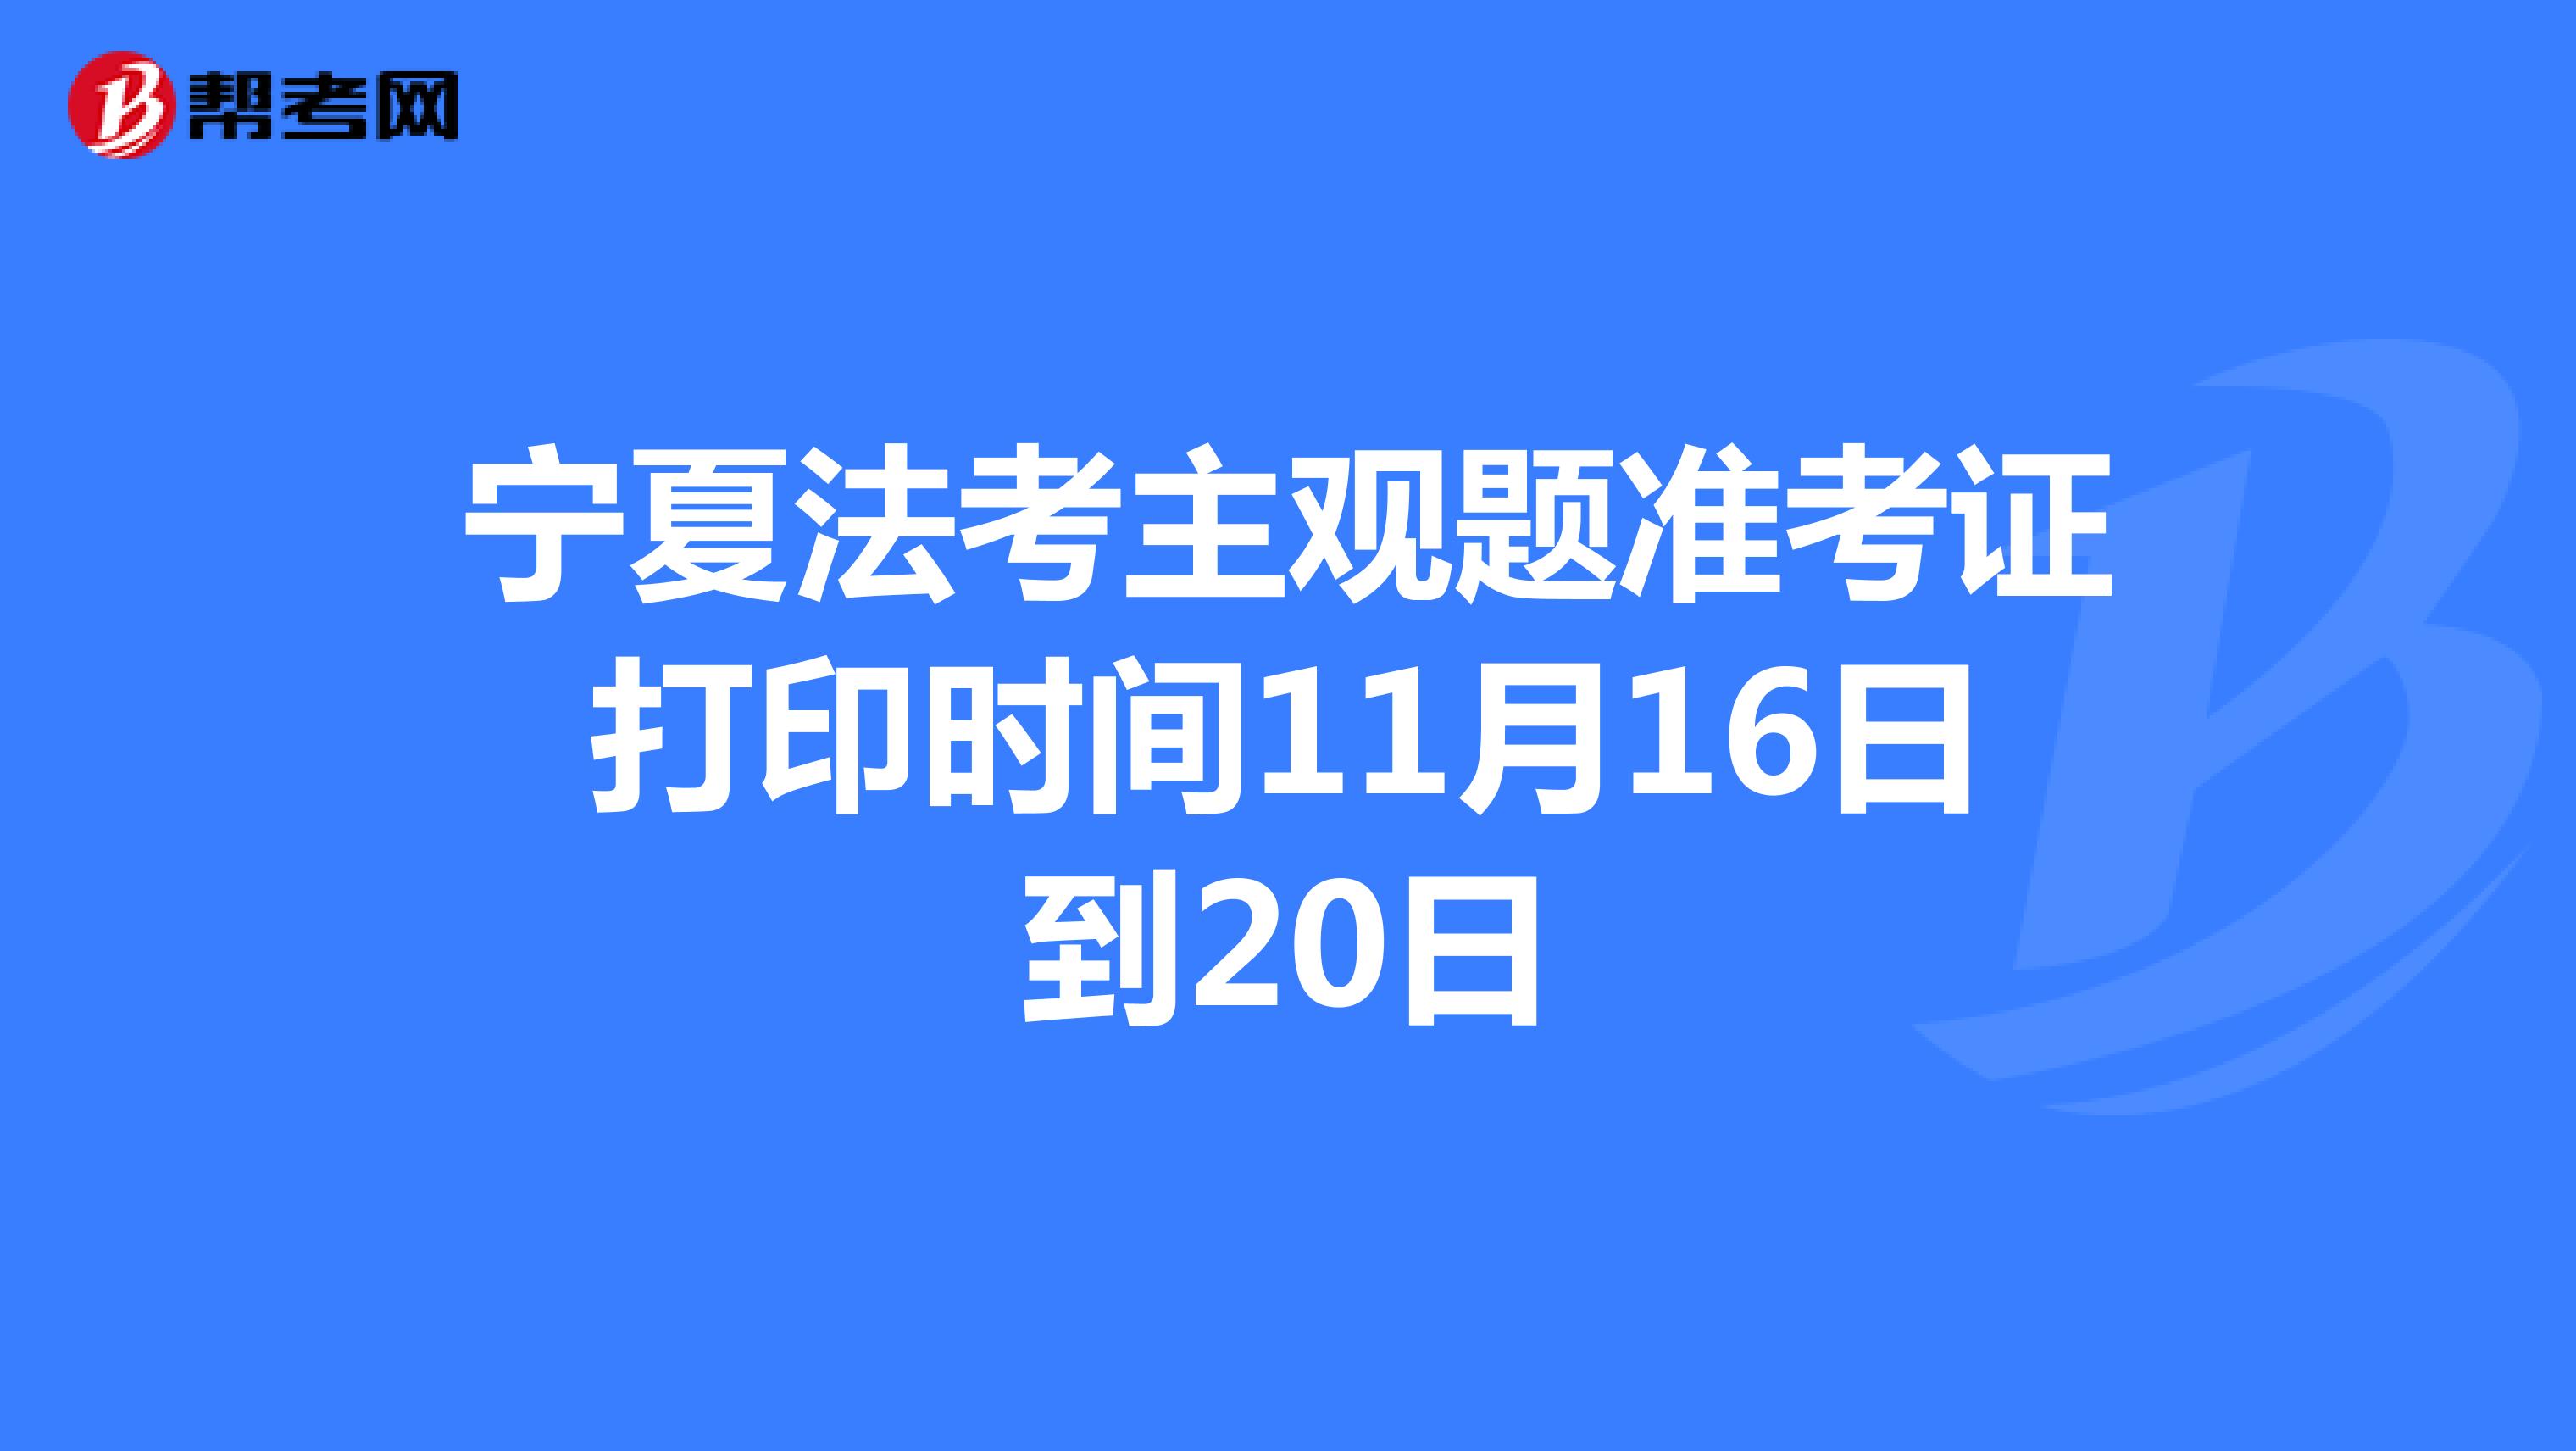 宁夏法考主观题准考证打印时间11月16日到20日